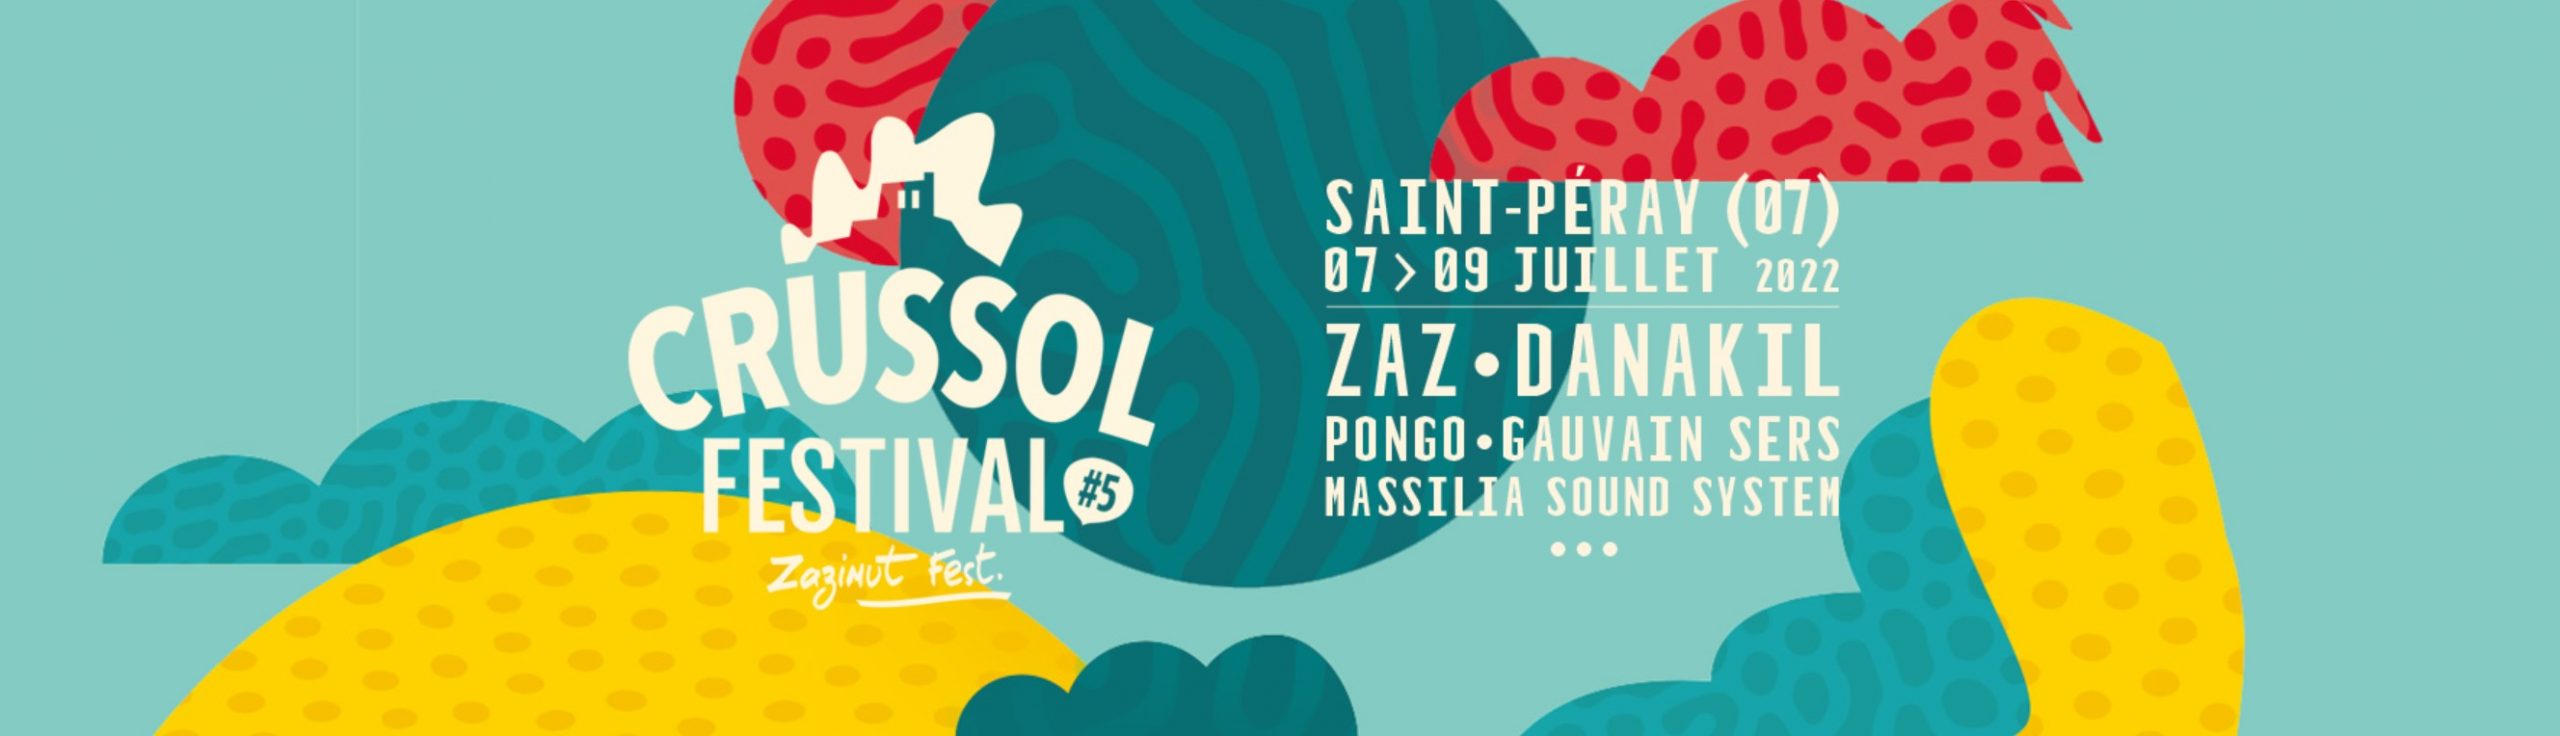 Premiers noms pour le Crussol Festival 2022